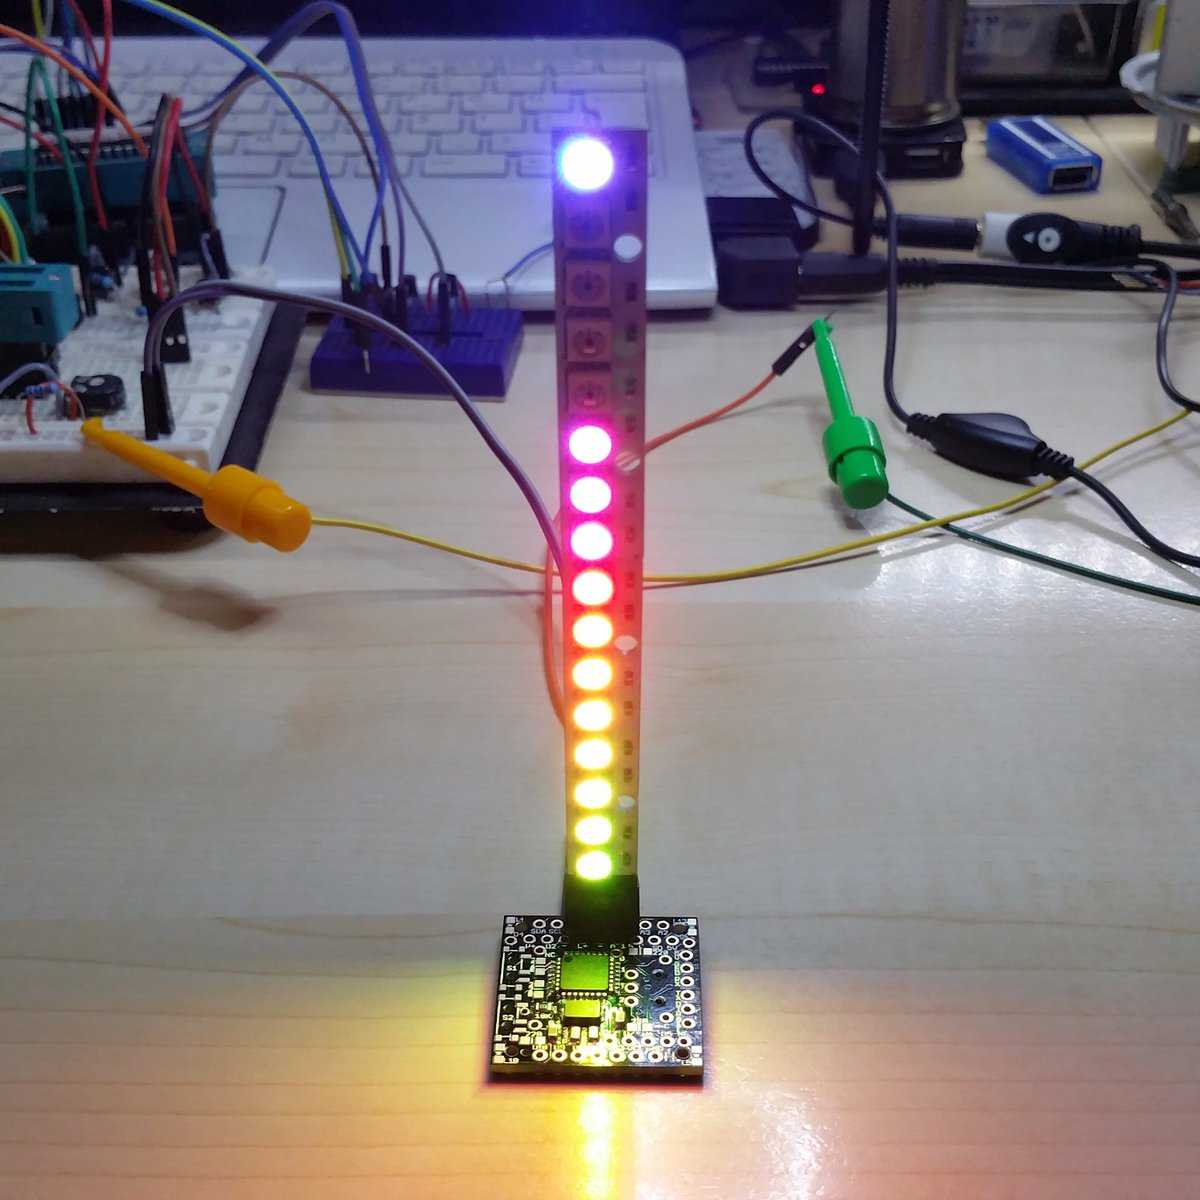 Как сделать цветомузыку своими руками – простая домашняя схема самодельной светомузыки на светодиодах через arduino